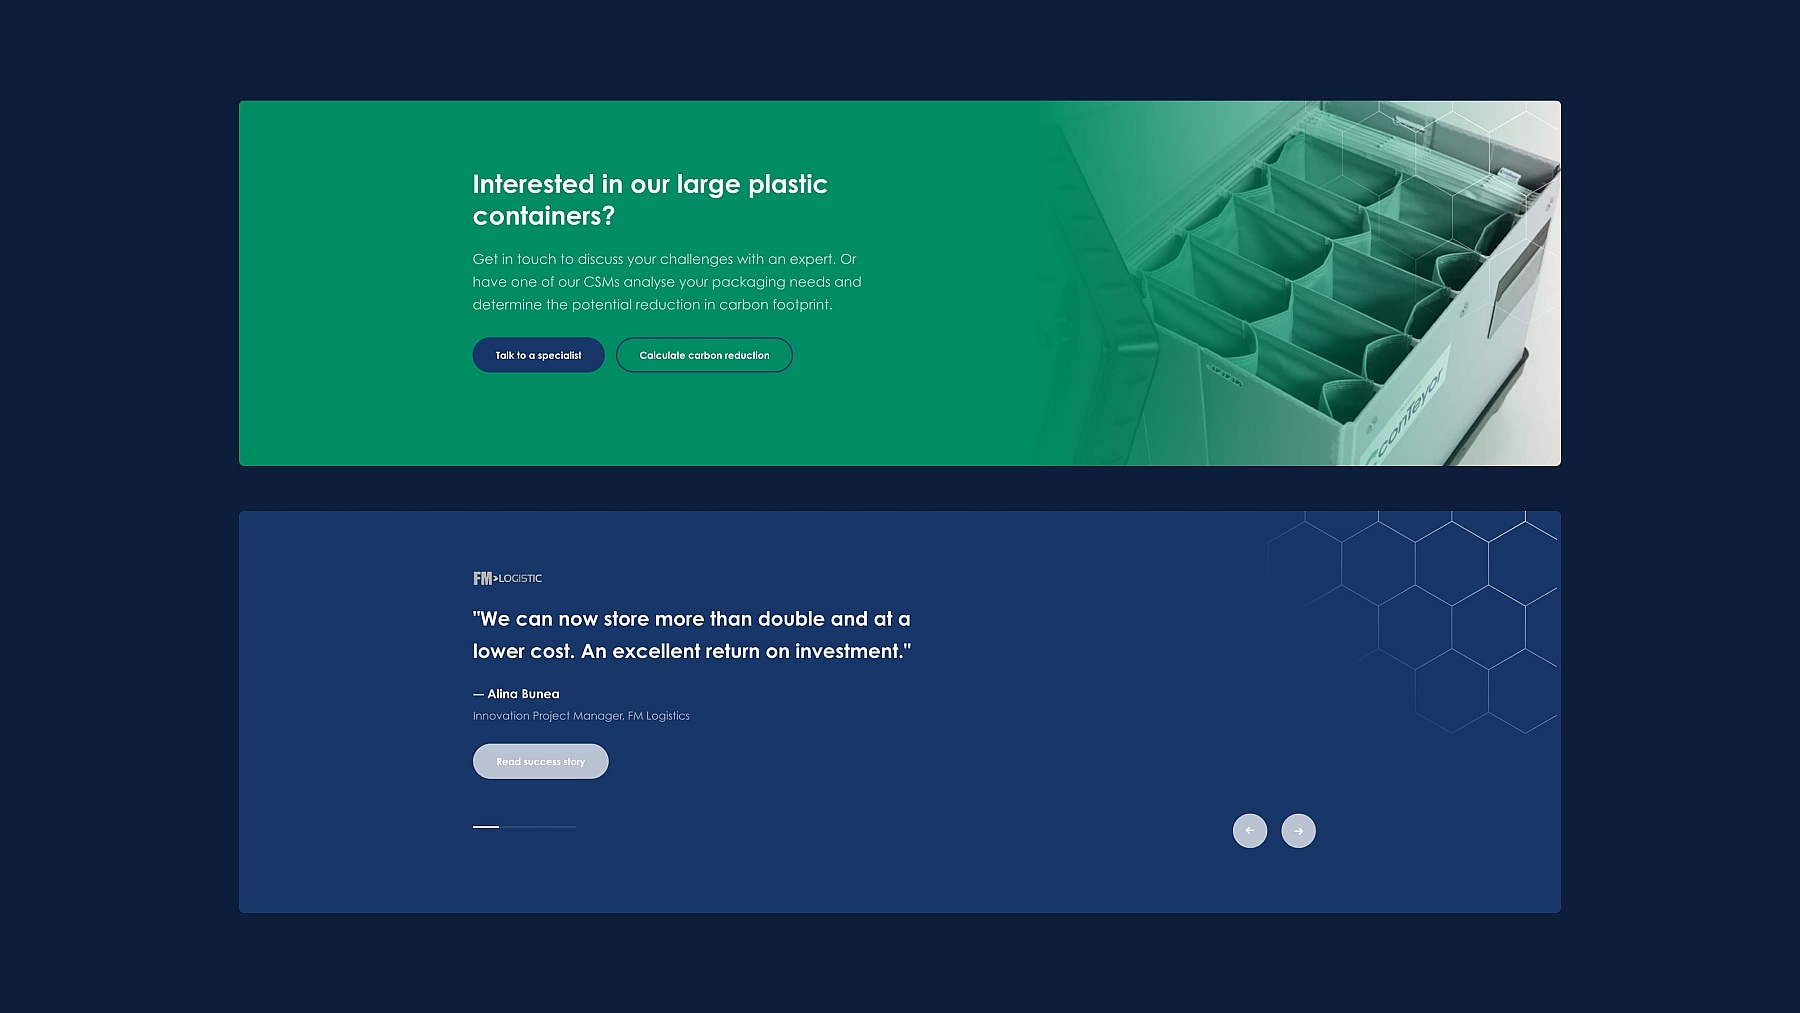 Screenshots van (details van) de website die conTeyor liet maken door Heave Webdesign Antwerpen